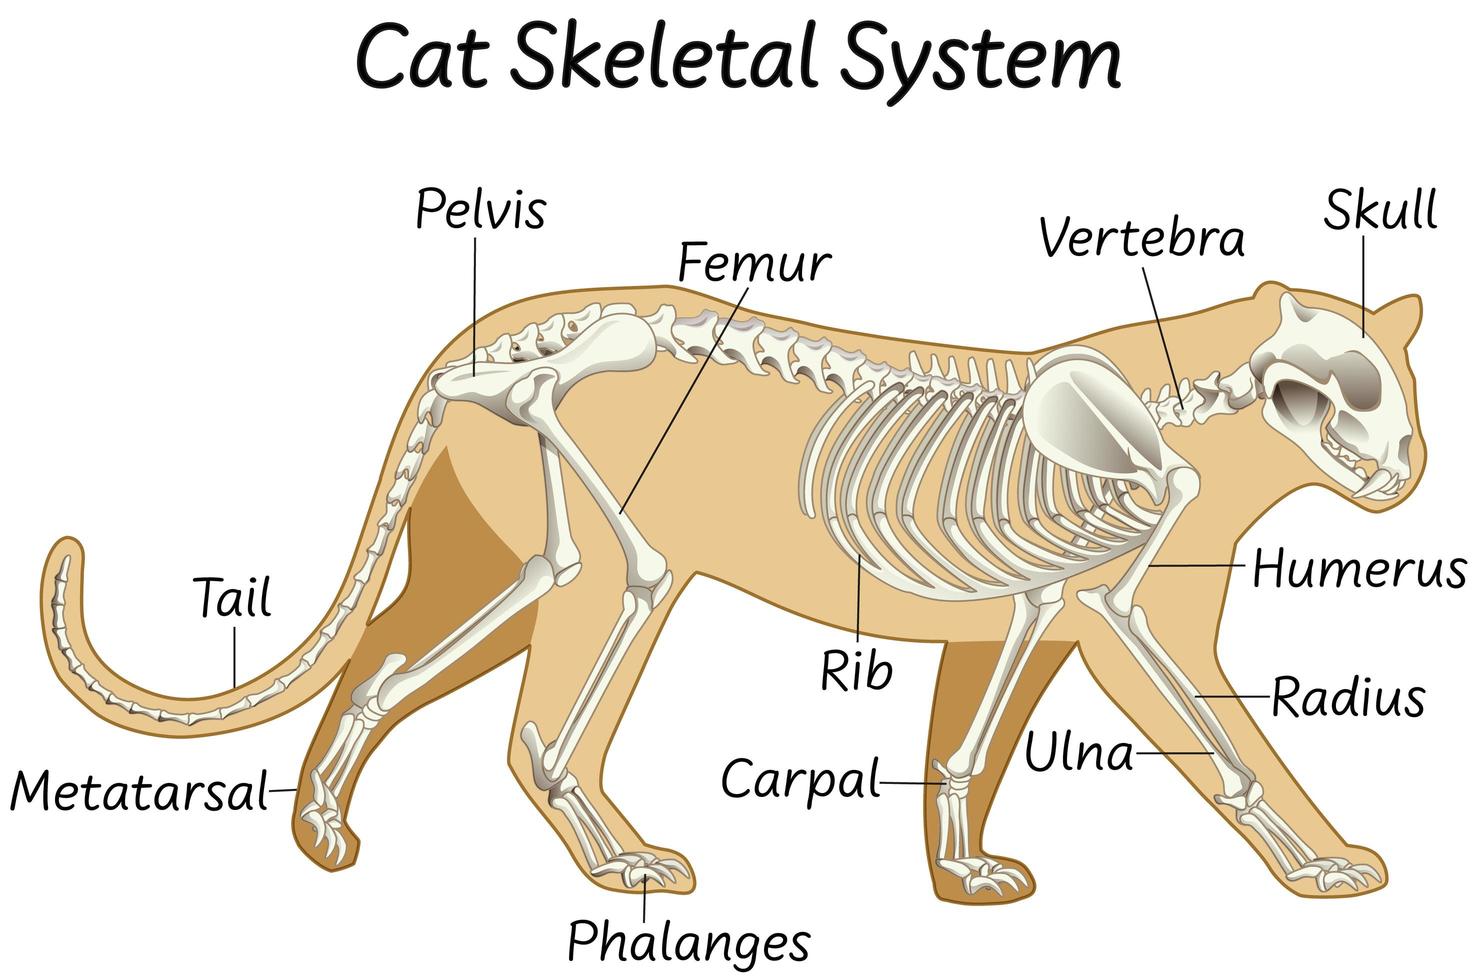 anatomie de la conception du système squelettique d'un chat vecteur